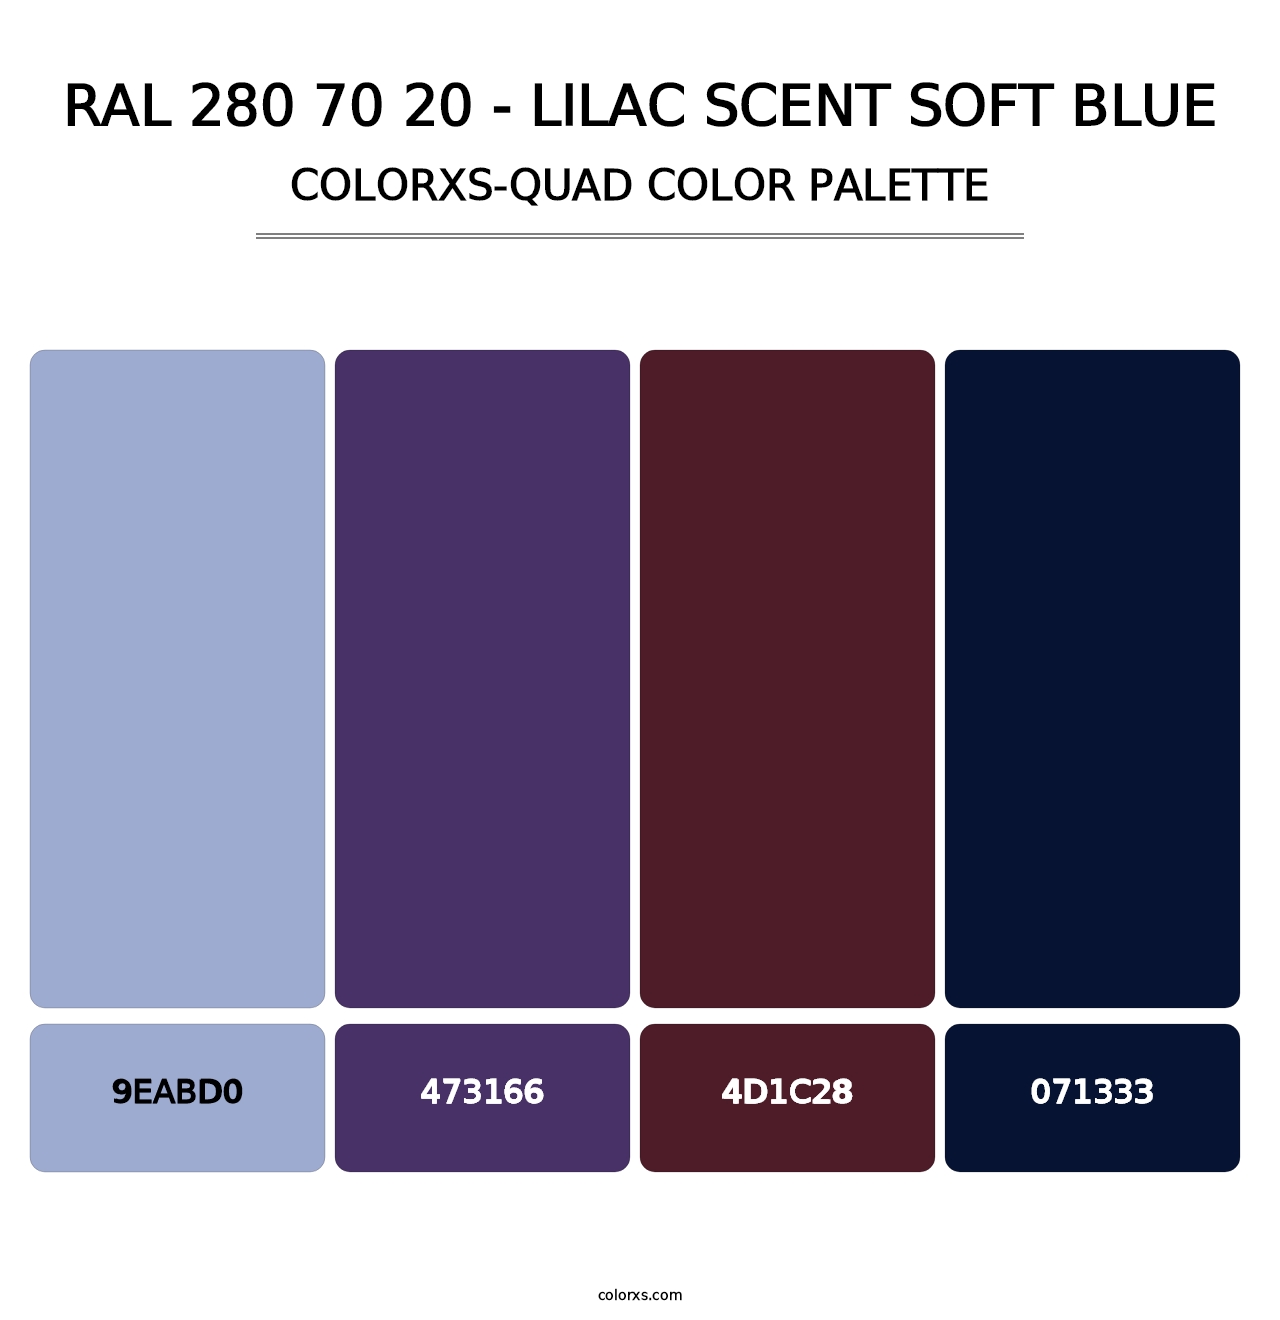 RAL 280 70 20 - Lilac Scent Soft Blue - Colorxs Quad Palette